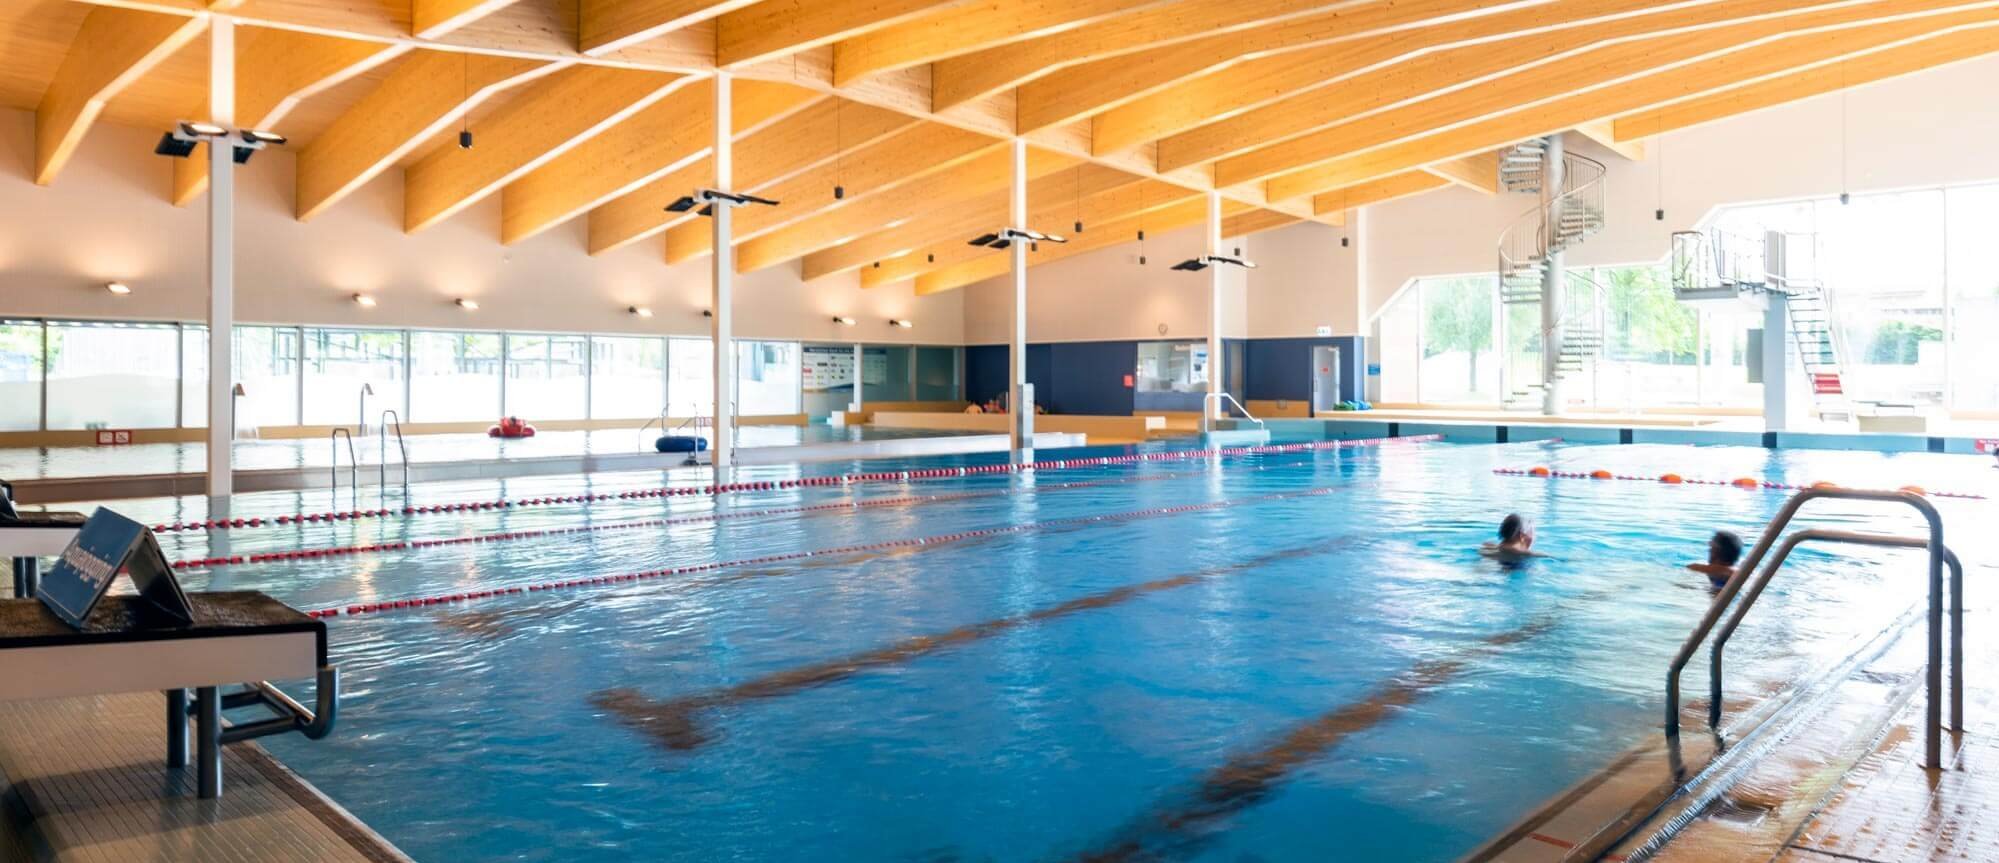 Sportbecken im Hallenbad vom Schwimmbad Altdorf